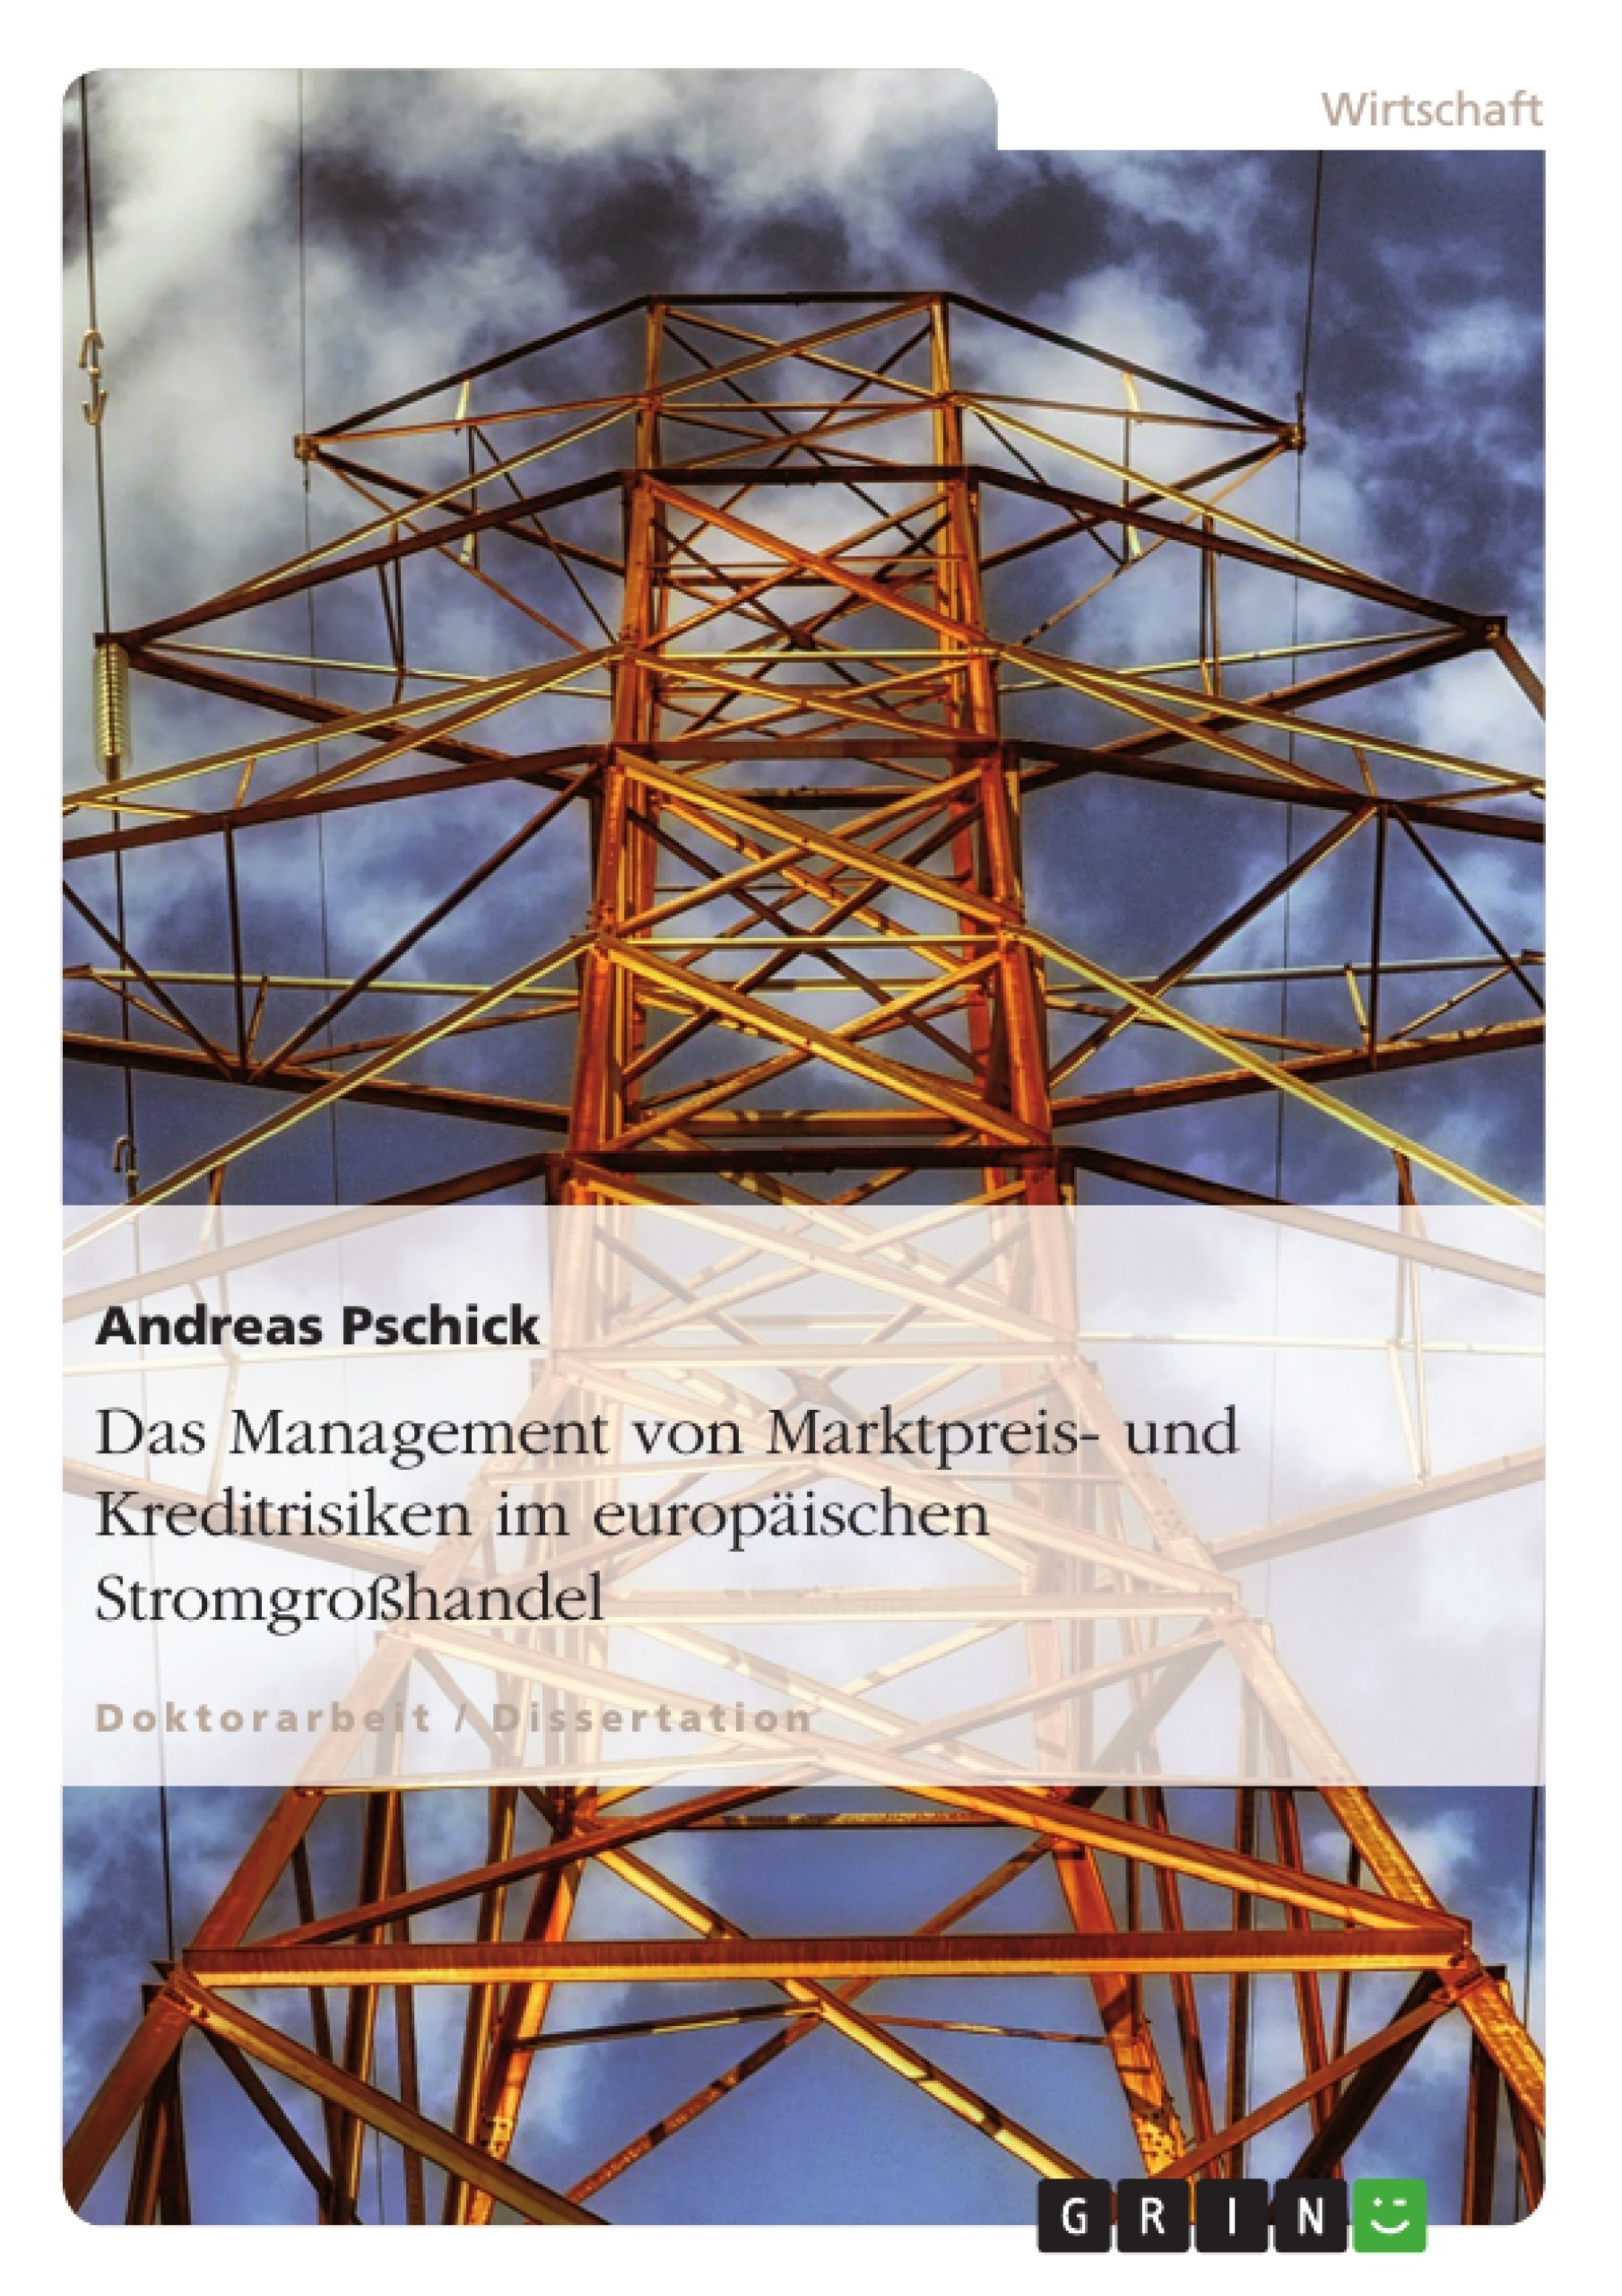 Titre: Das Management von Marktpreis- und Kreditrisiken im europäischen Stromgroßhandel